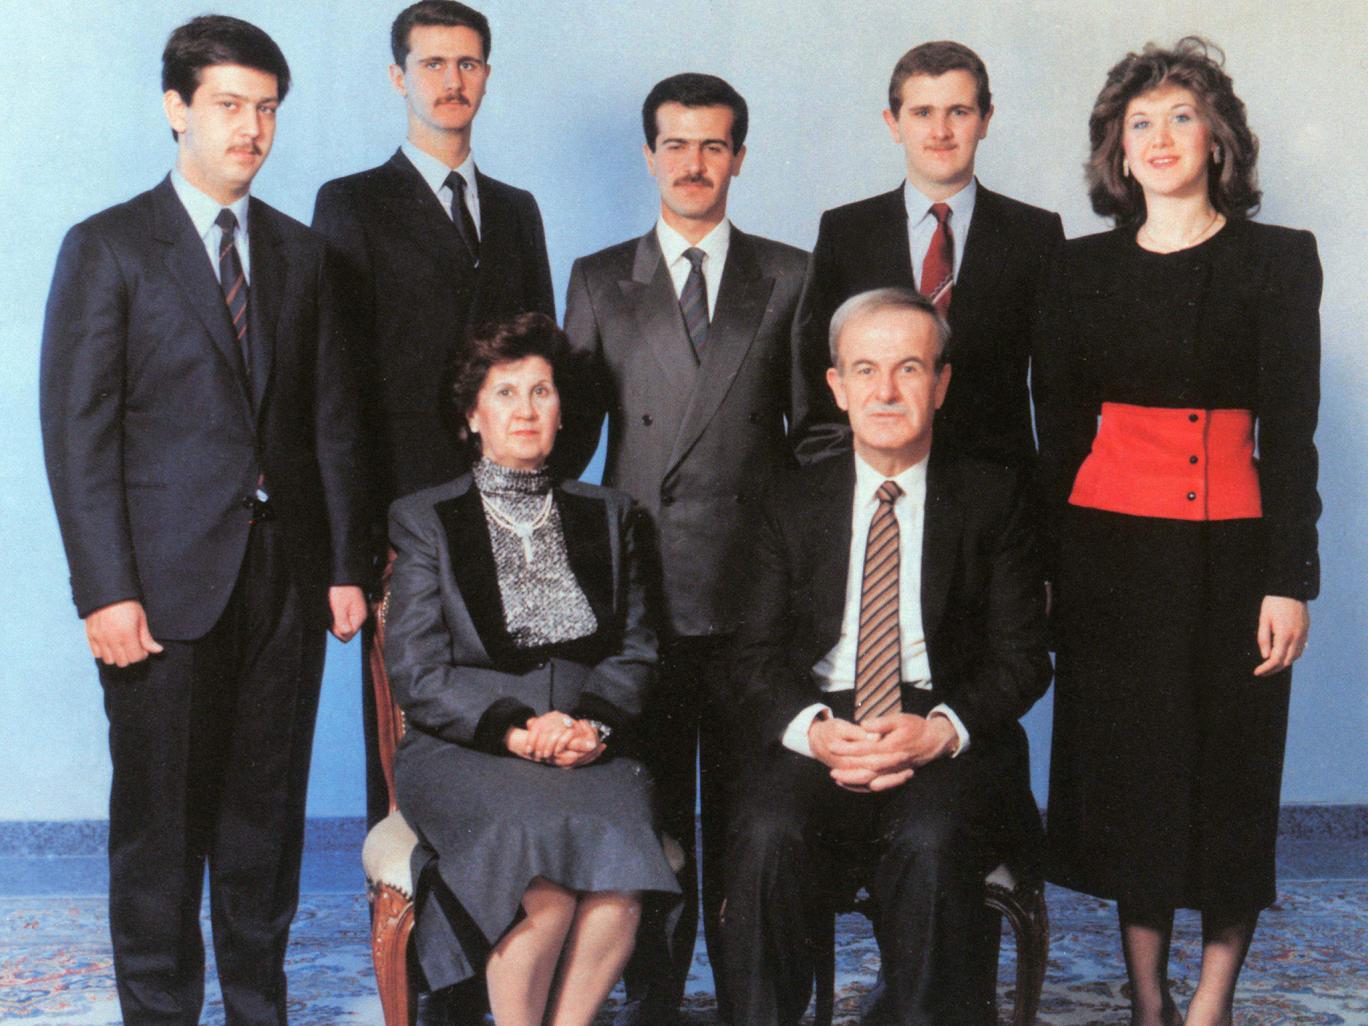 Al_Assad_family.jpg